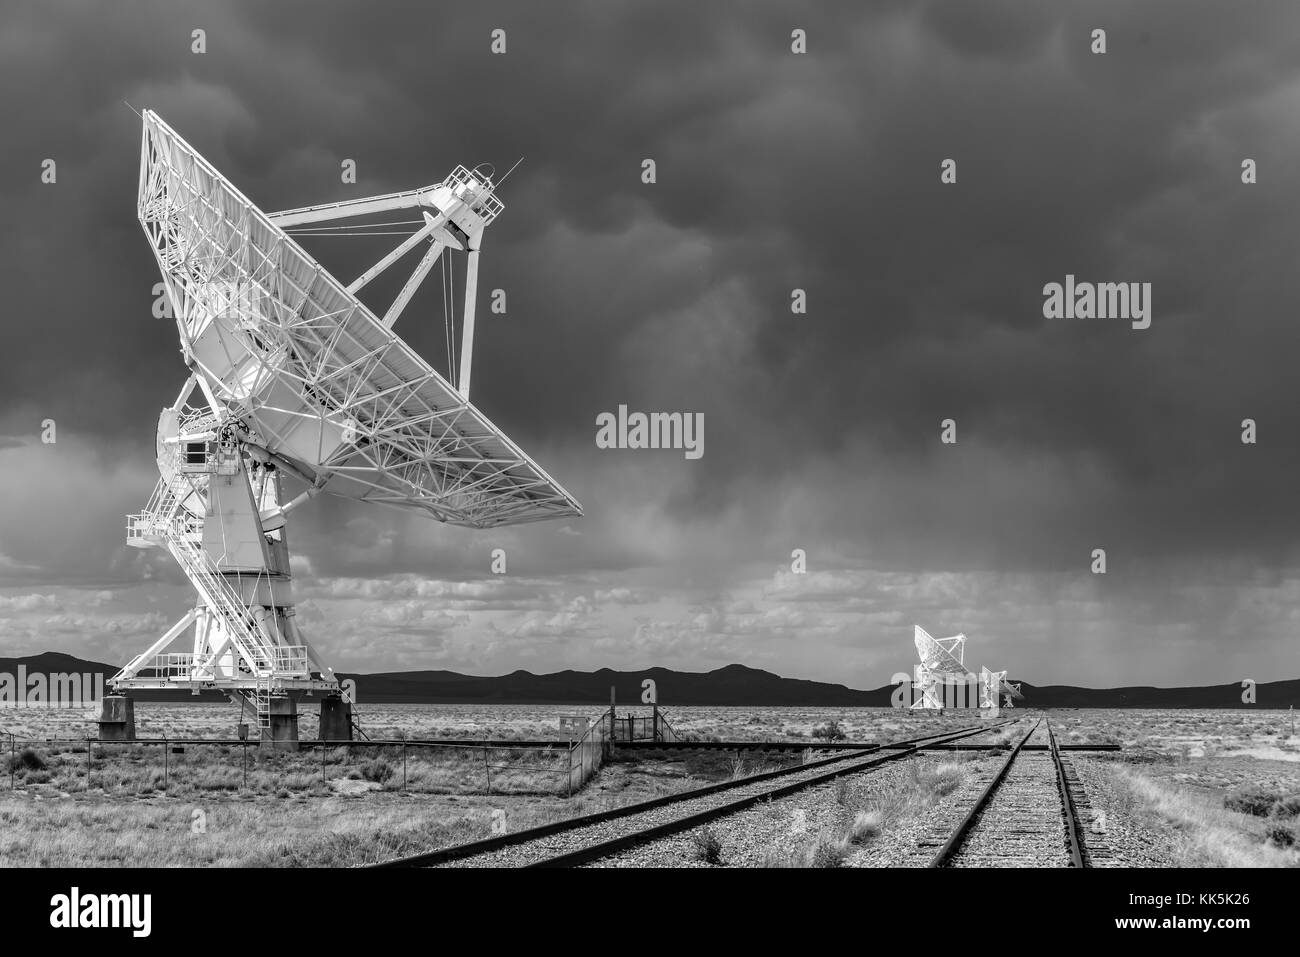 Der Karl g. jansky sehr große Reihe (VLA) ist ein Radio Astronomy Observatory auf den Ebenen von San Agustin in New Mexico entfernt. Stockfoto